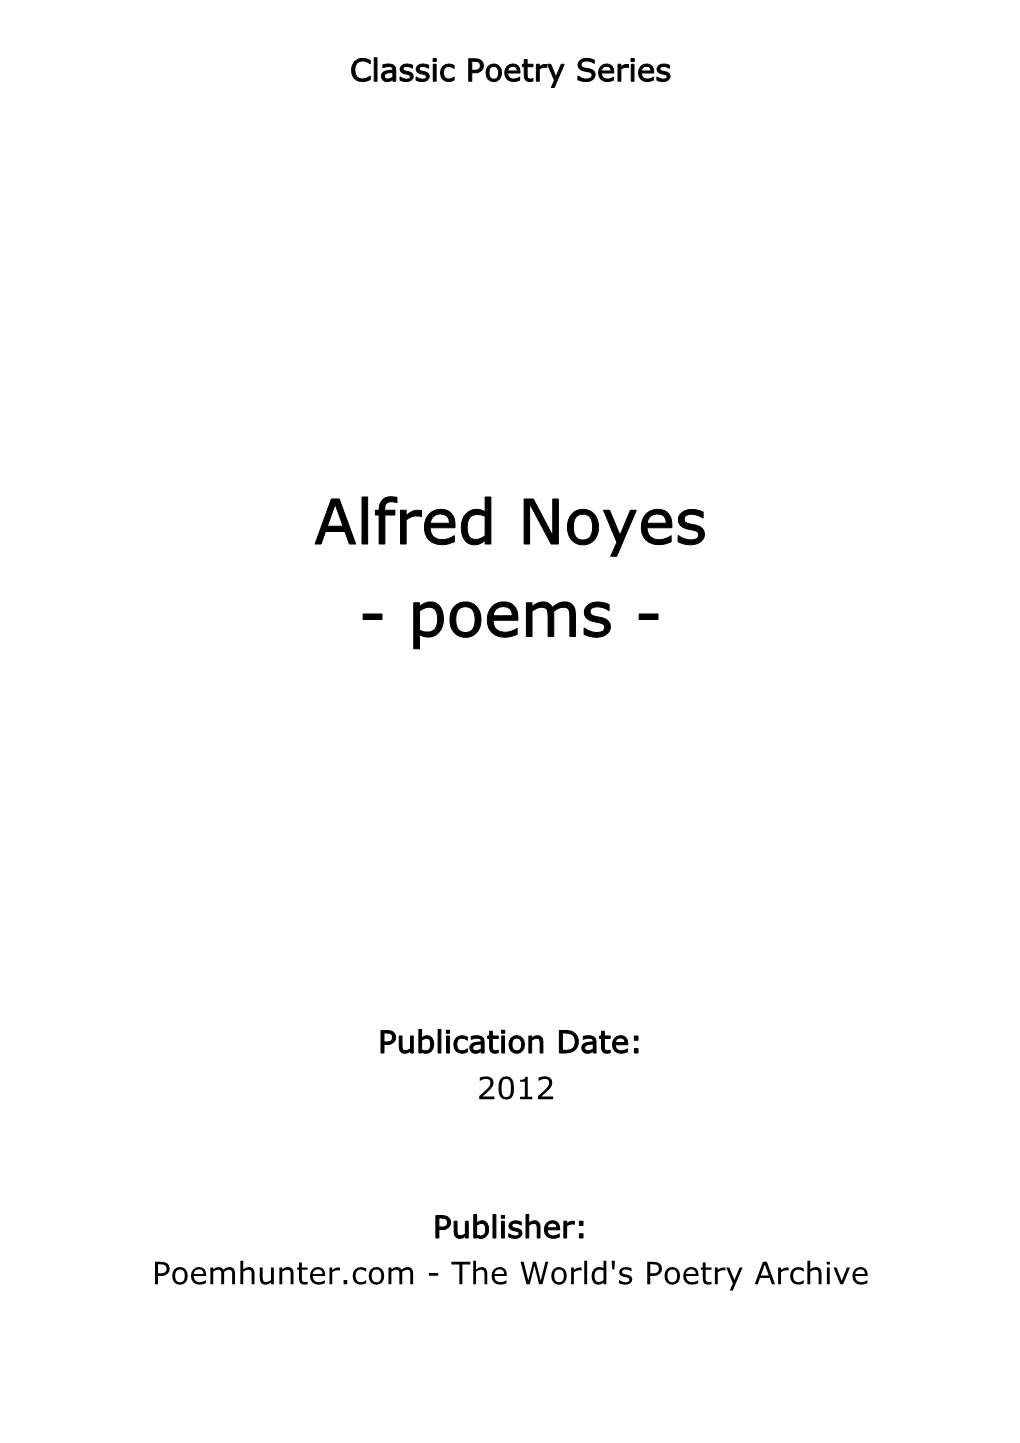 Alfred Noyes - Poems